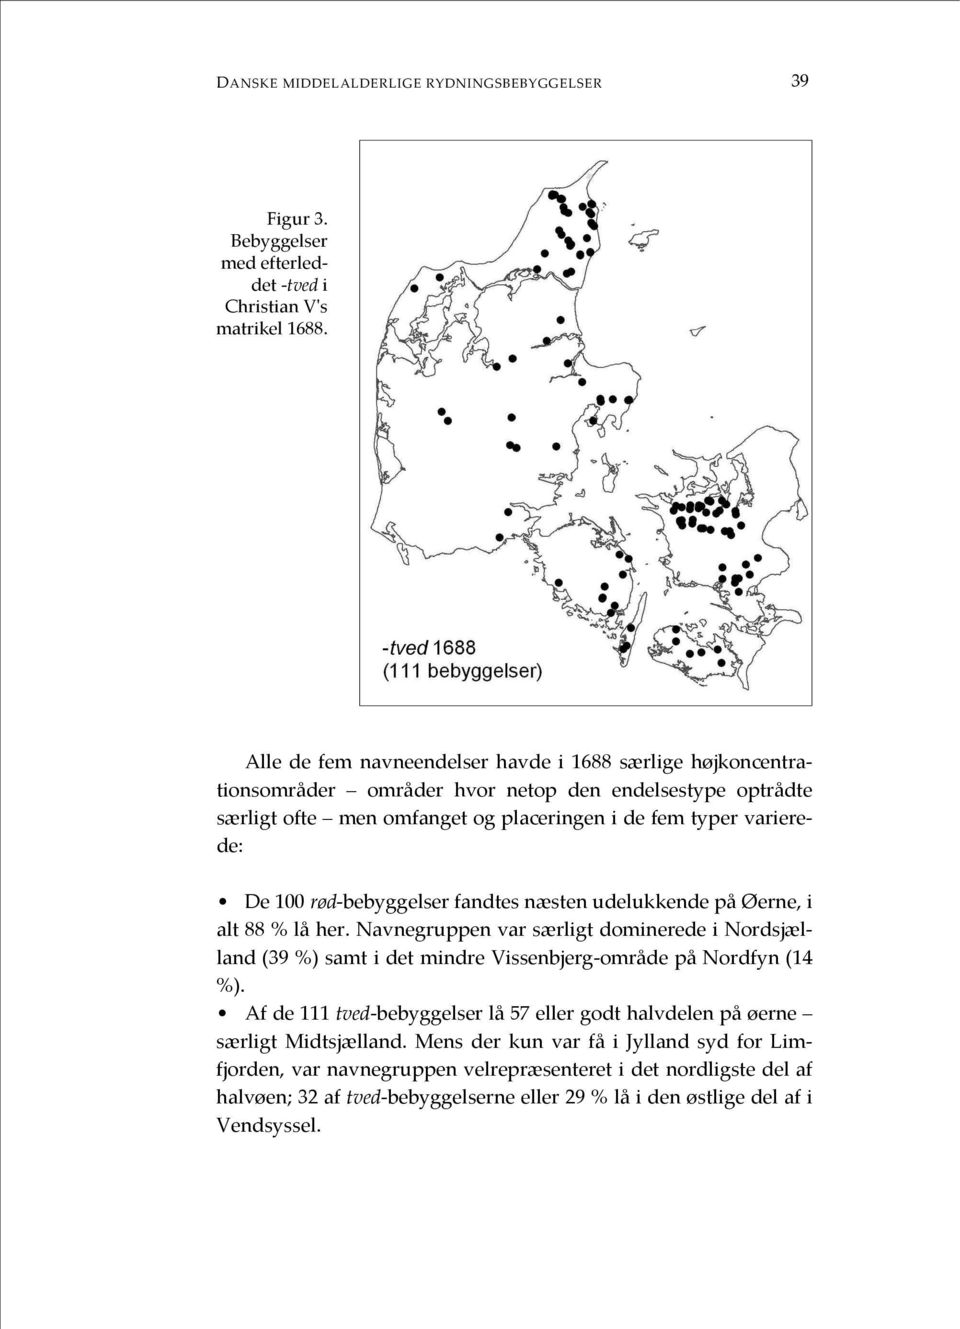 rød-bebyggelser fandtes næsten udelukkende på Øerne, i alt 88 % lå her. Navnegruppen var særligt dominerede i Nordsjælland (39 %) samt i det mindre Vissenbjerg-område på Nordfyn (14 %).